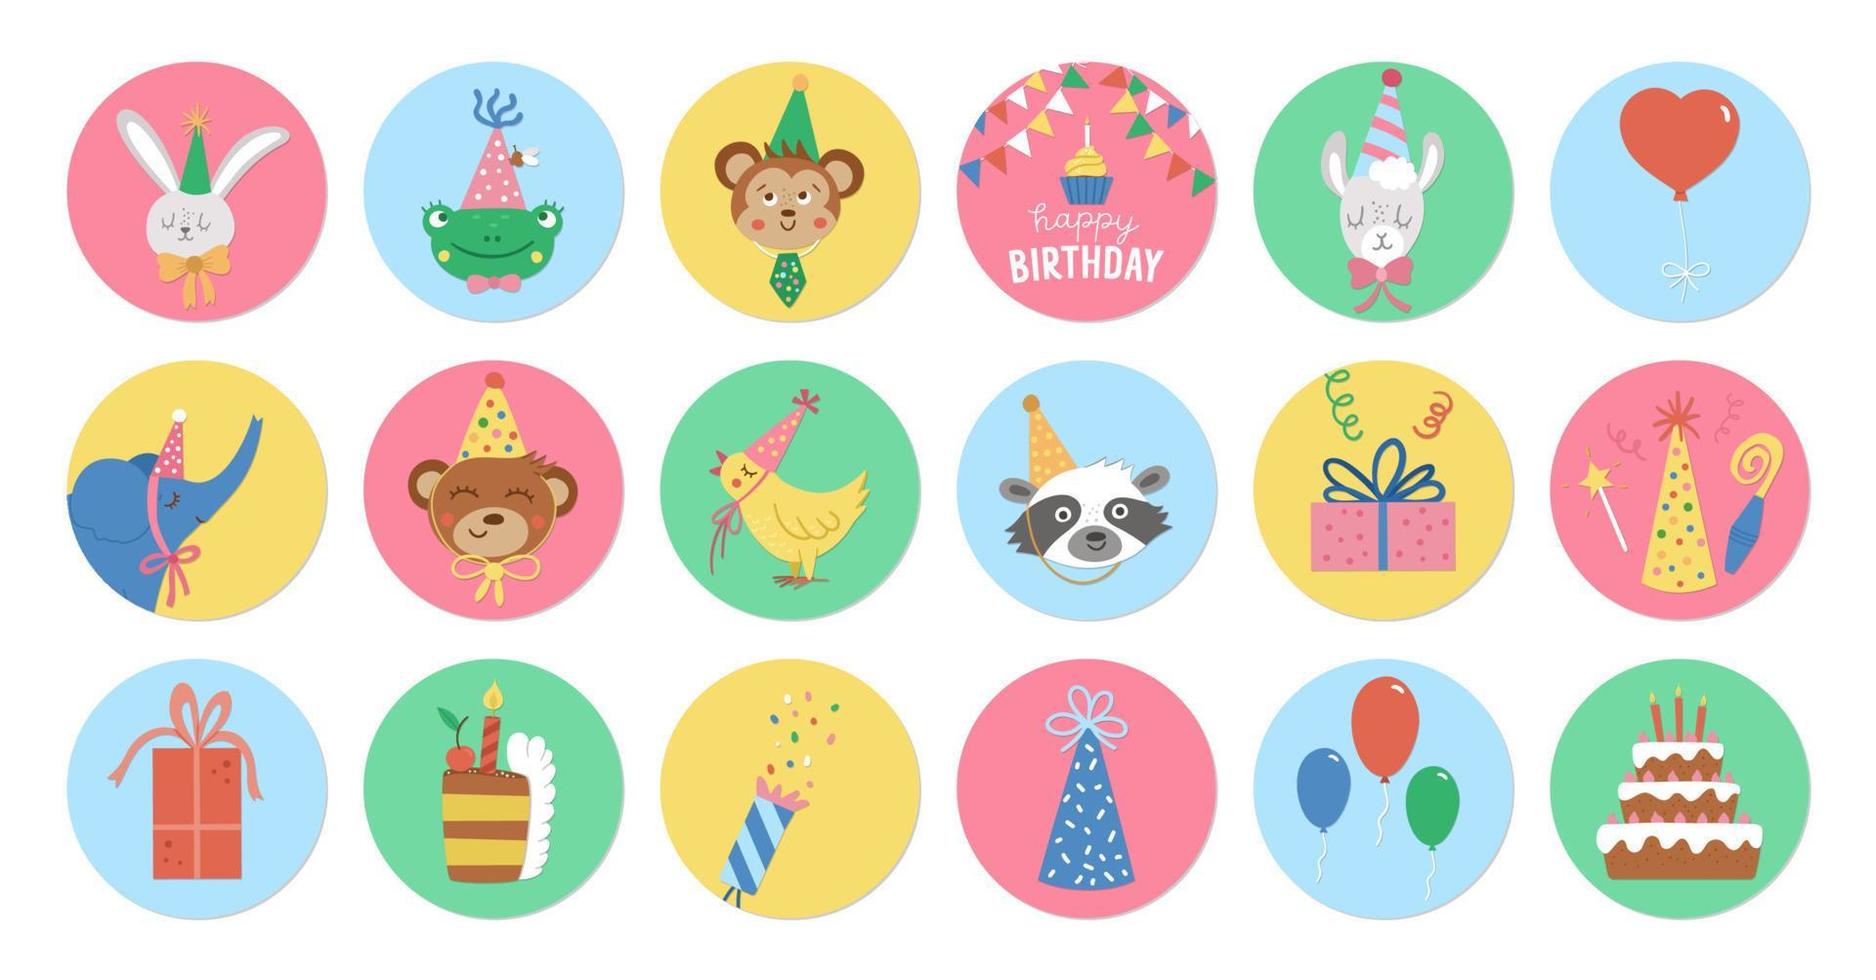 Süße Reihe von runden Geburtstags-Highlight-Symbolen oder Avatar-Designs mit süßen Tierköpfen, Kuchen, Geschenk. Vektor-Jubiläums-Feiertags-Pin oder Abzeichen-Design isoliert auf weißem Hintergrund vektor